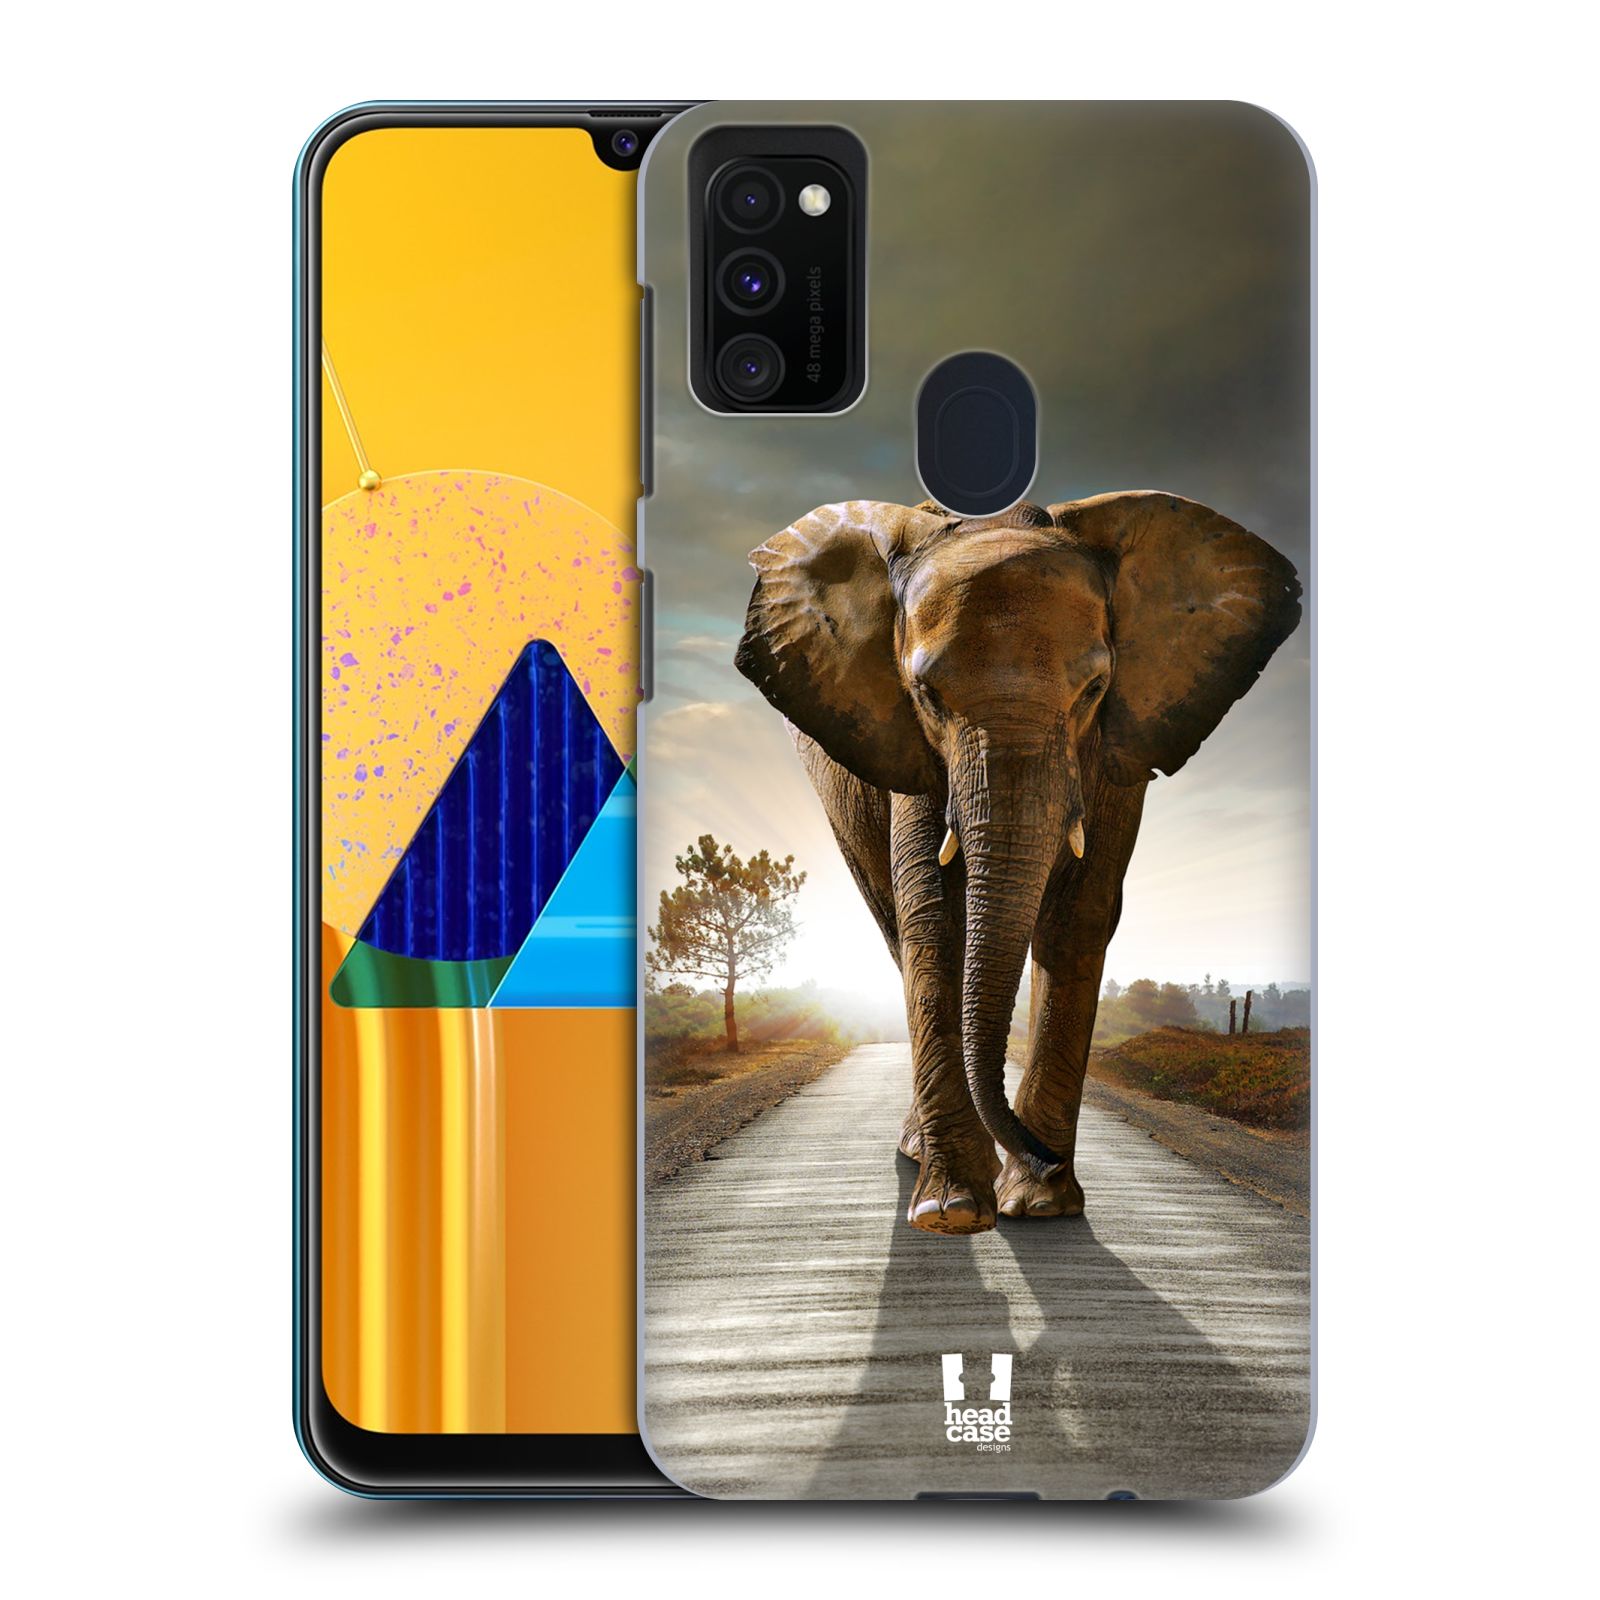 Zadní obal pro mobil Samsung Galaxy M21 - HEAD CASE - Svět zvířat kráčející slon